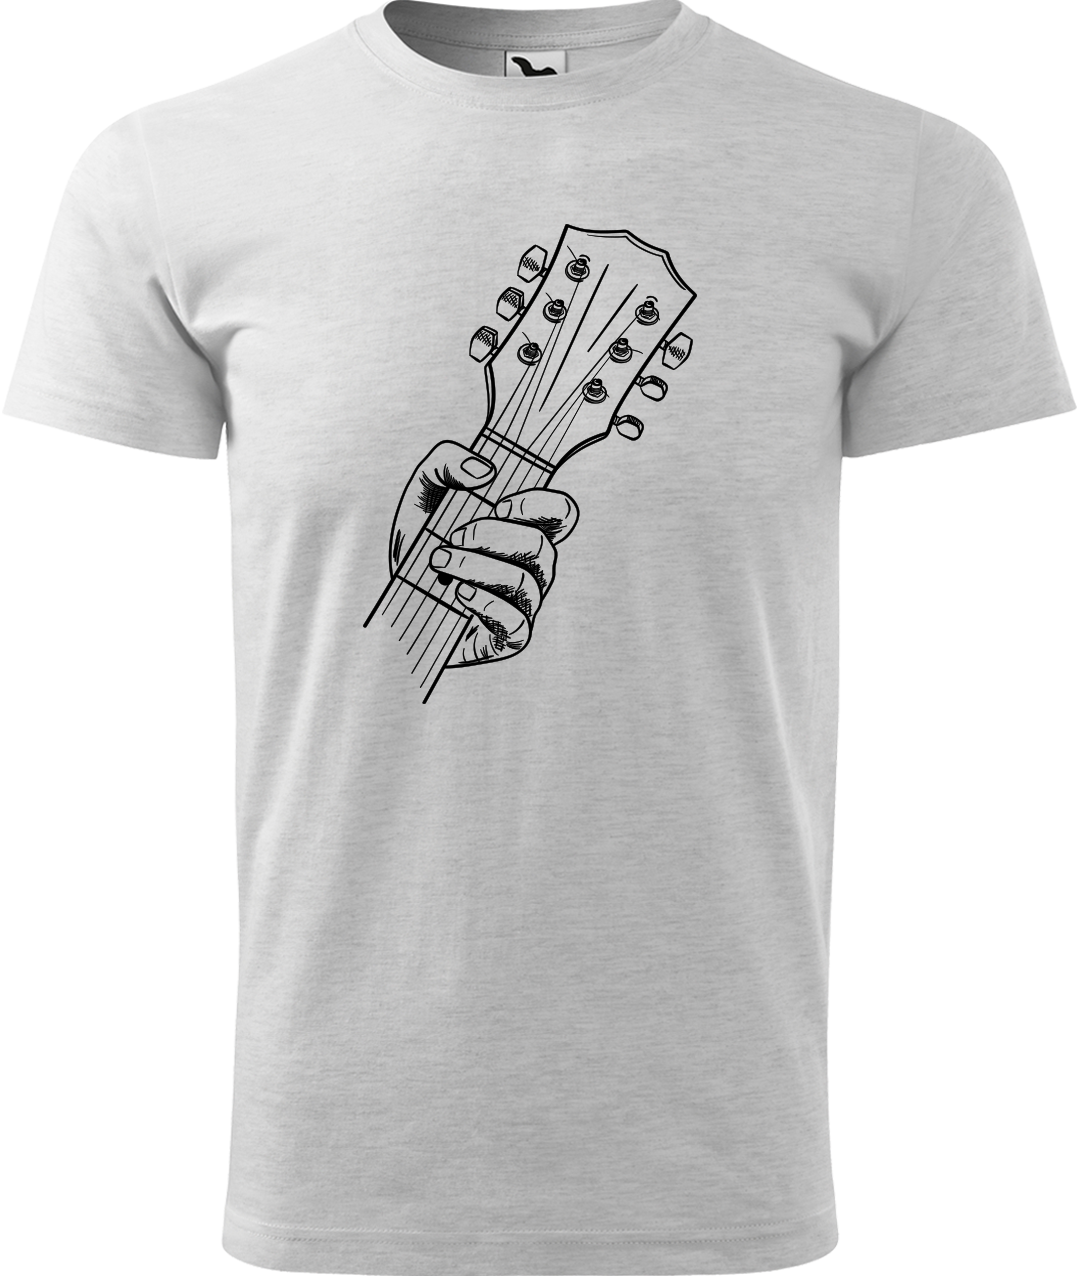 Pánské tričko s kytarou - Hlava kytary Velikost: 4XL, Barva: Světle šedý melír (03)